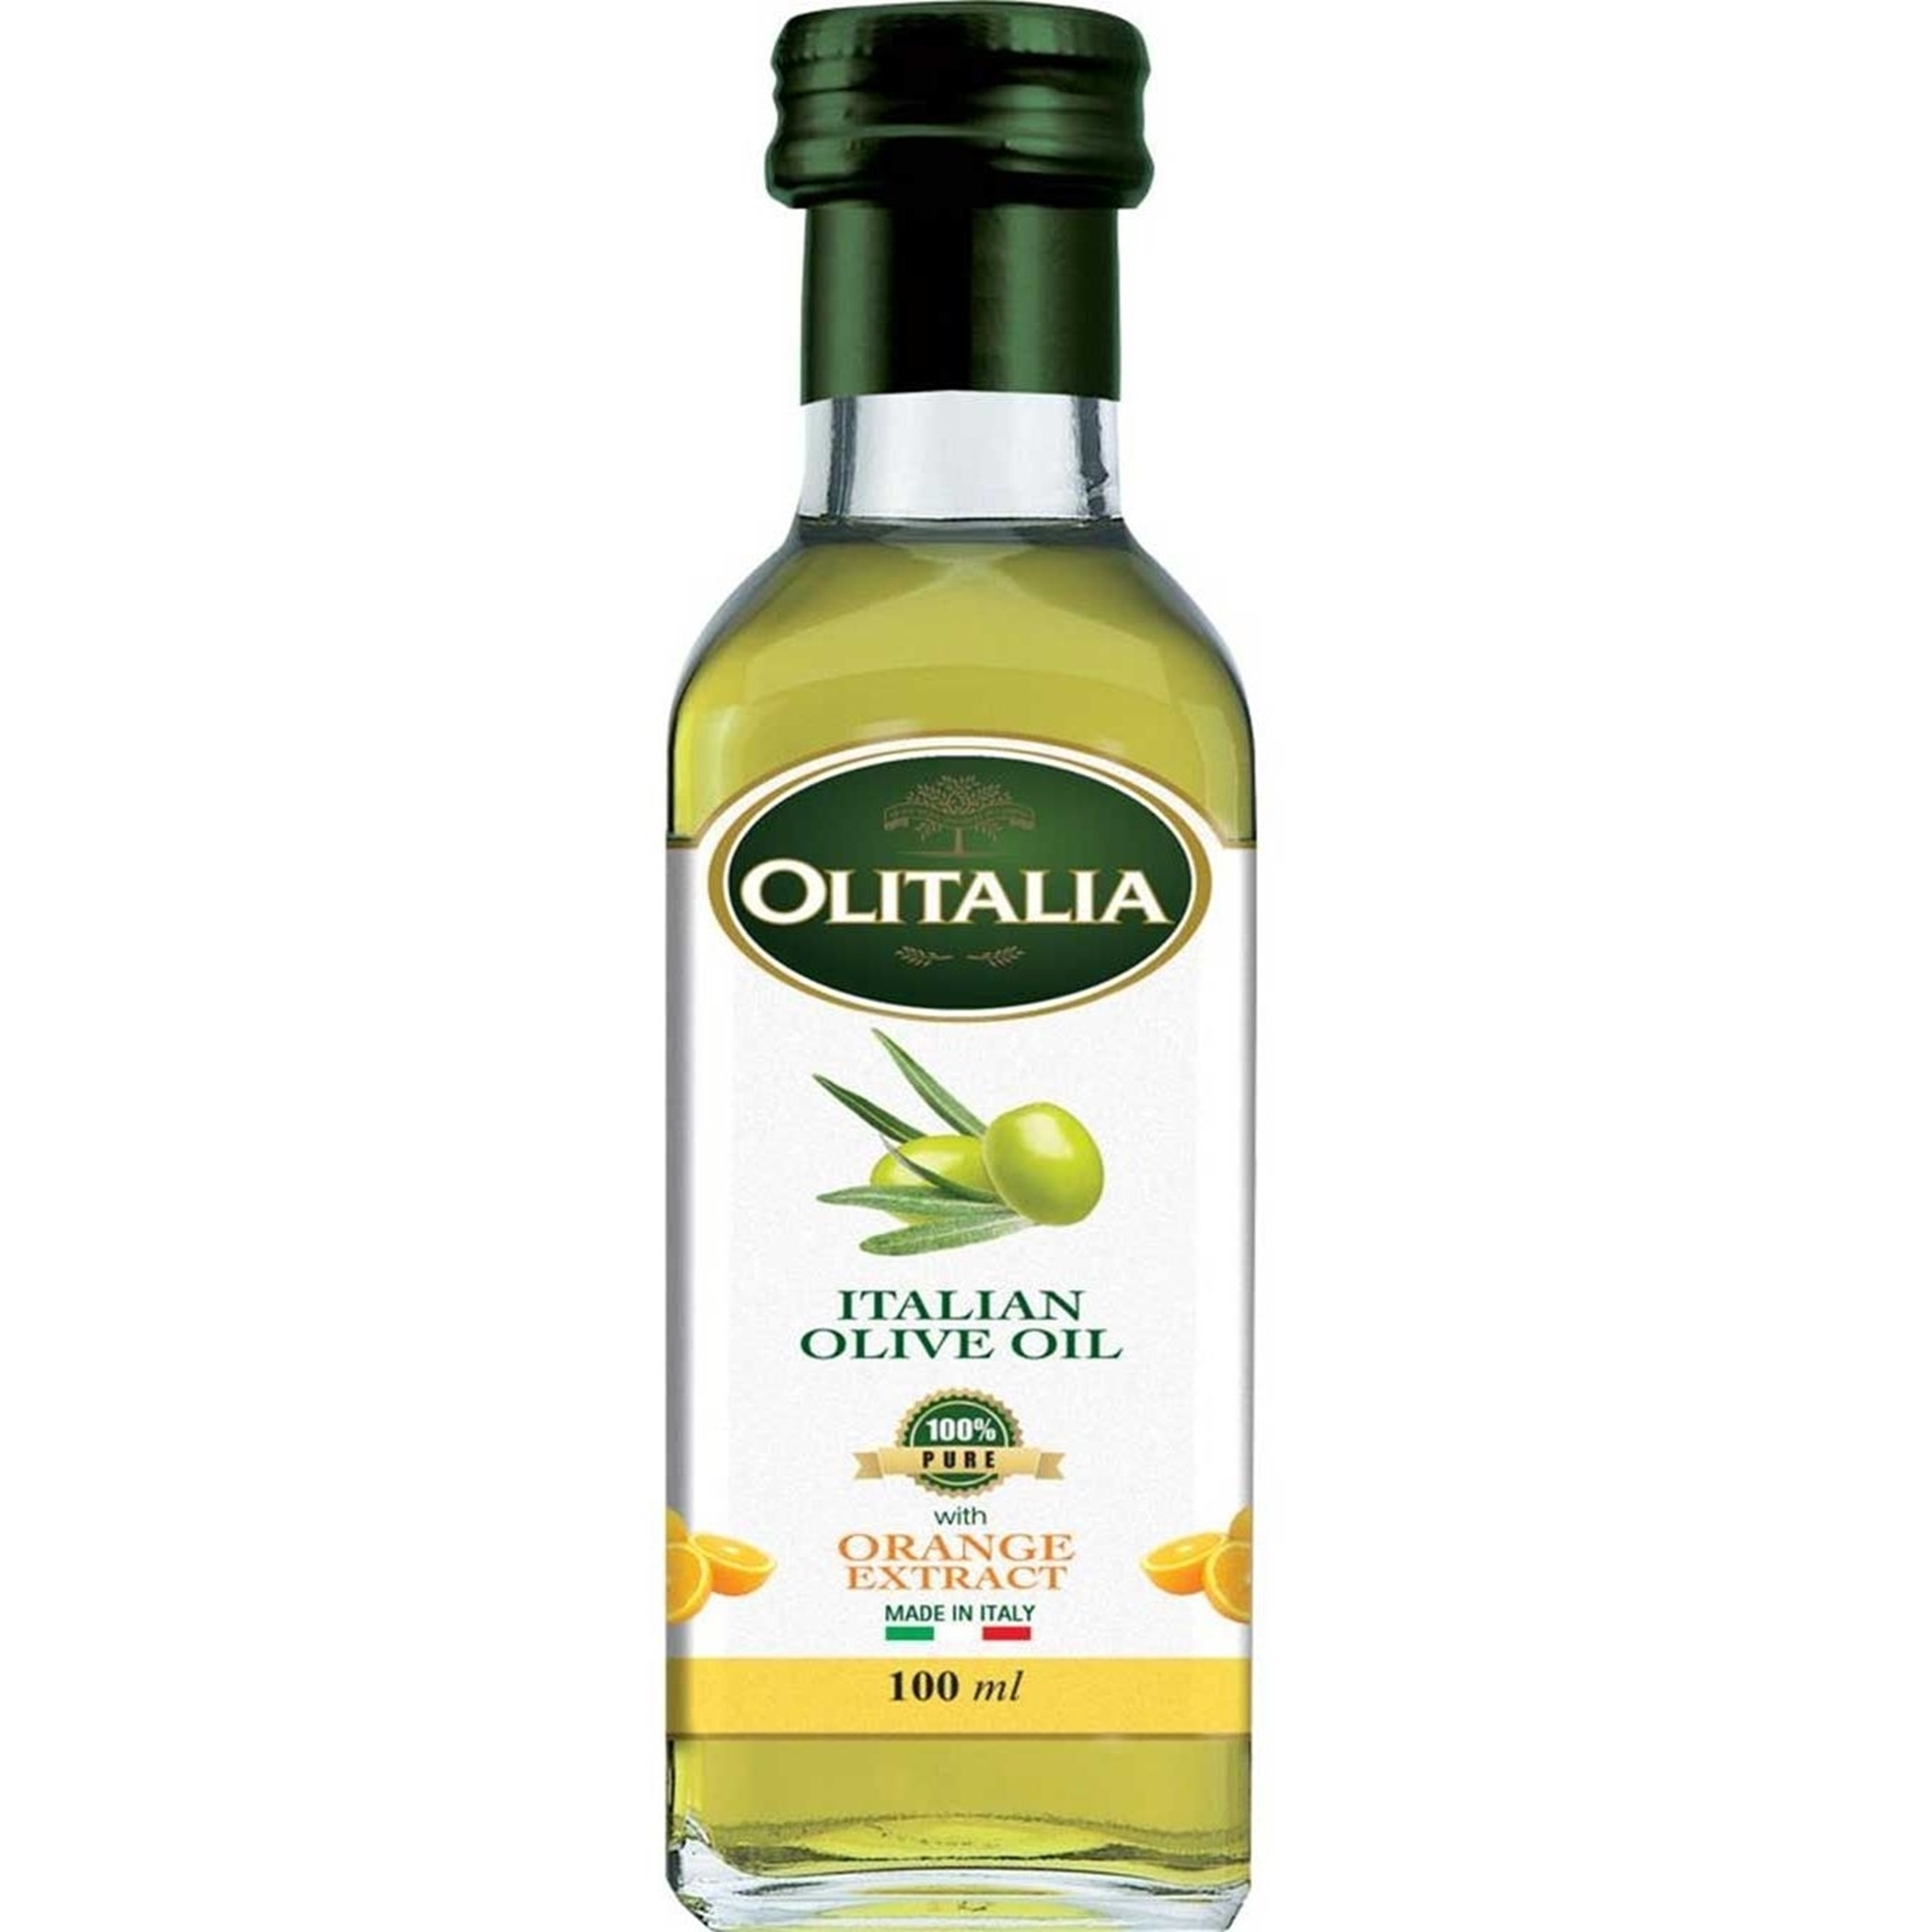 rekomendasi merk extra virgin olive oil terbaik